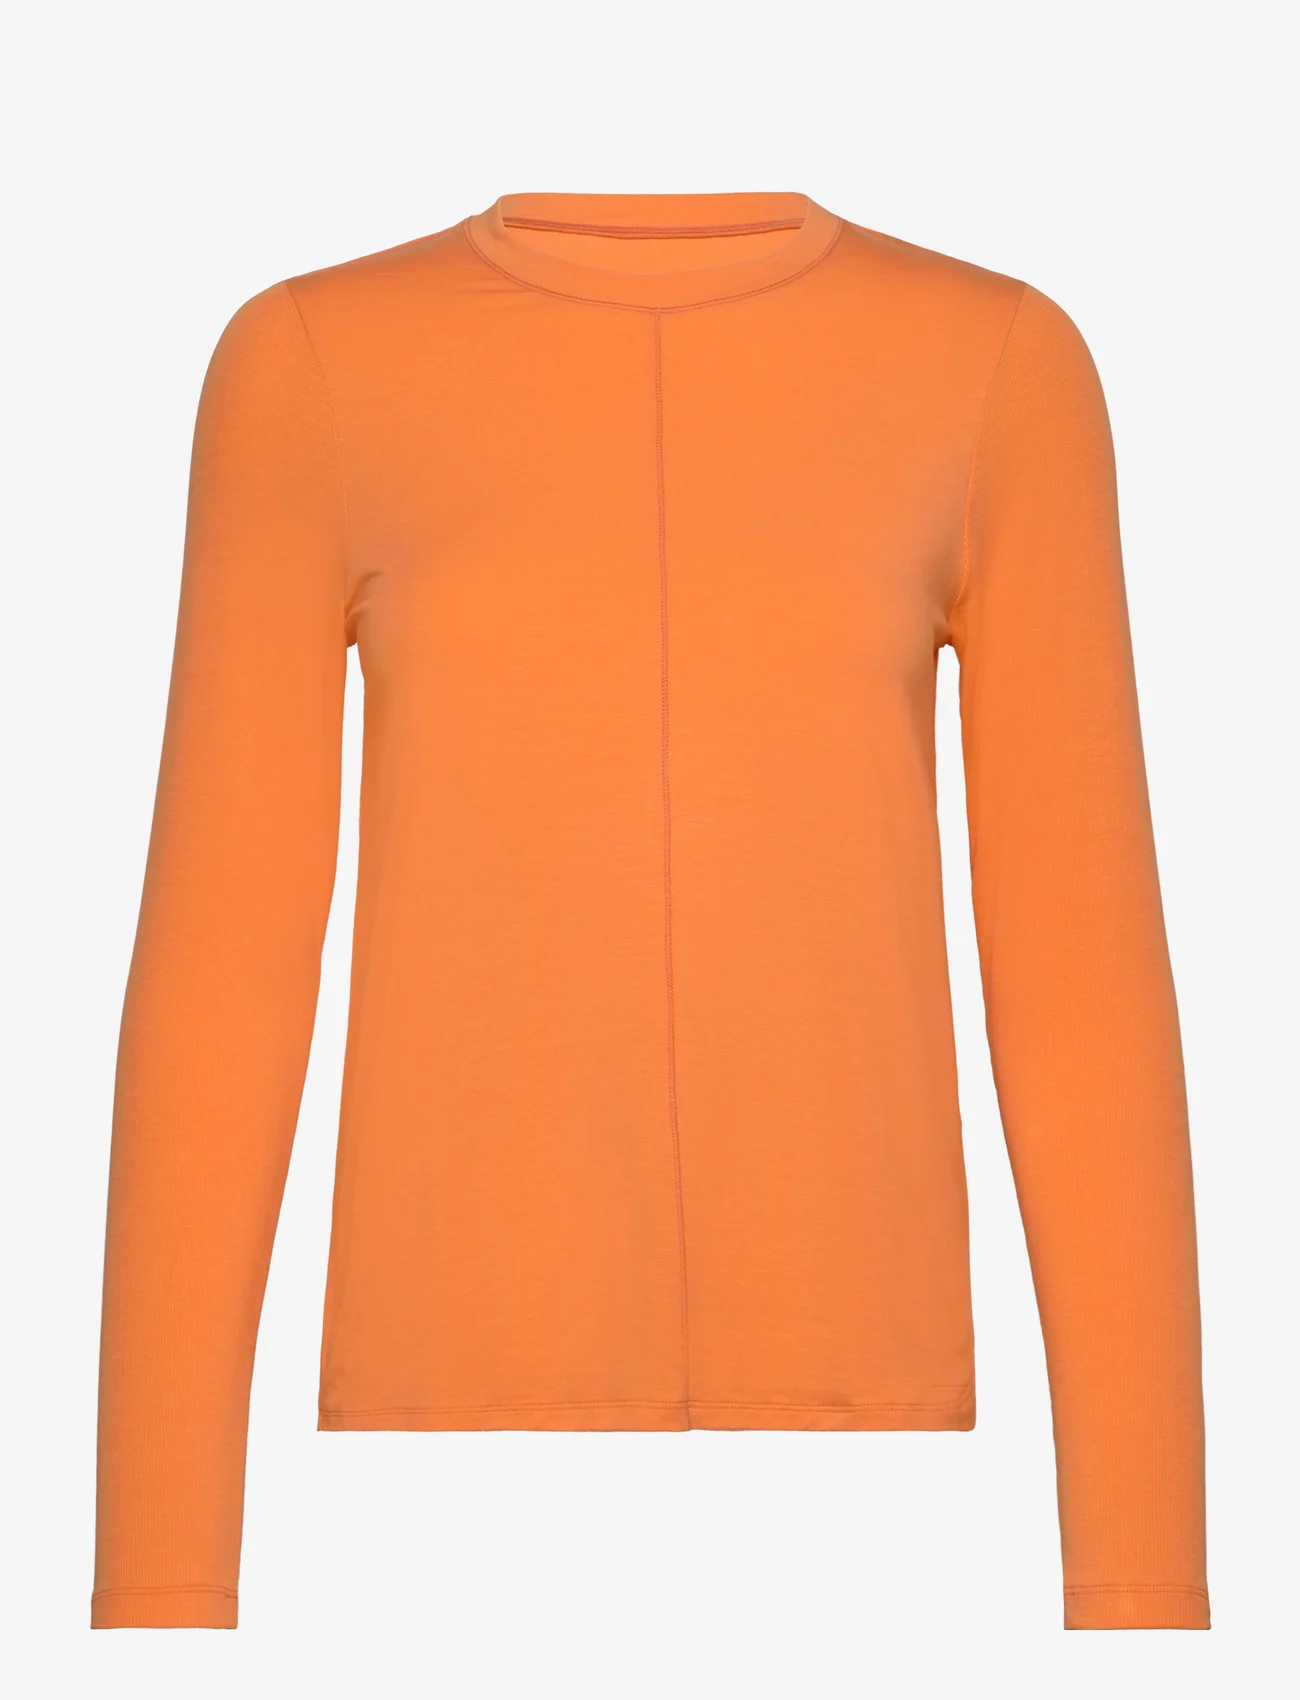 Casall - Delight Crew Neck Long Sleeve - topjes met lange mouwen - juicy orange - 0